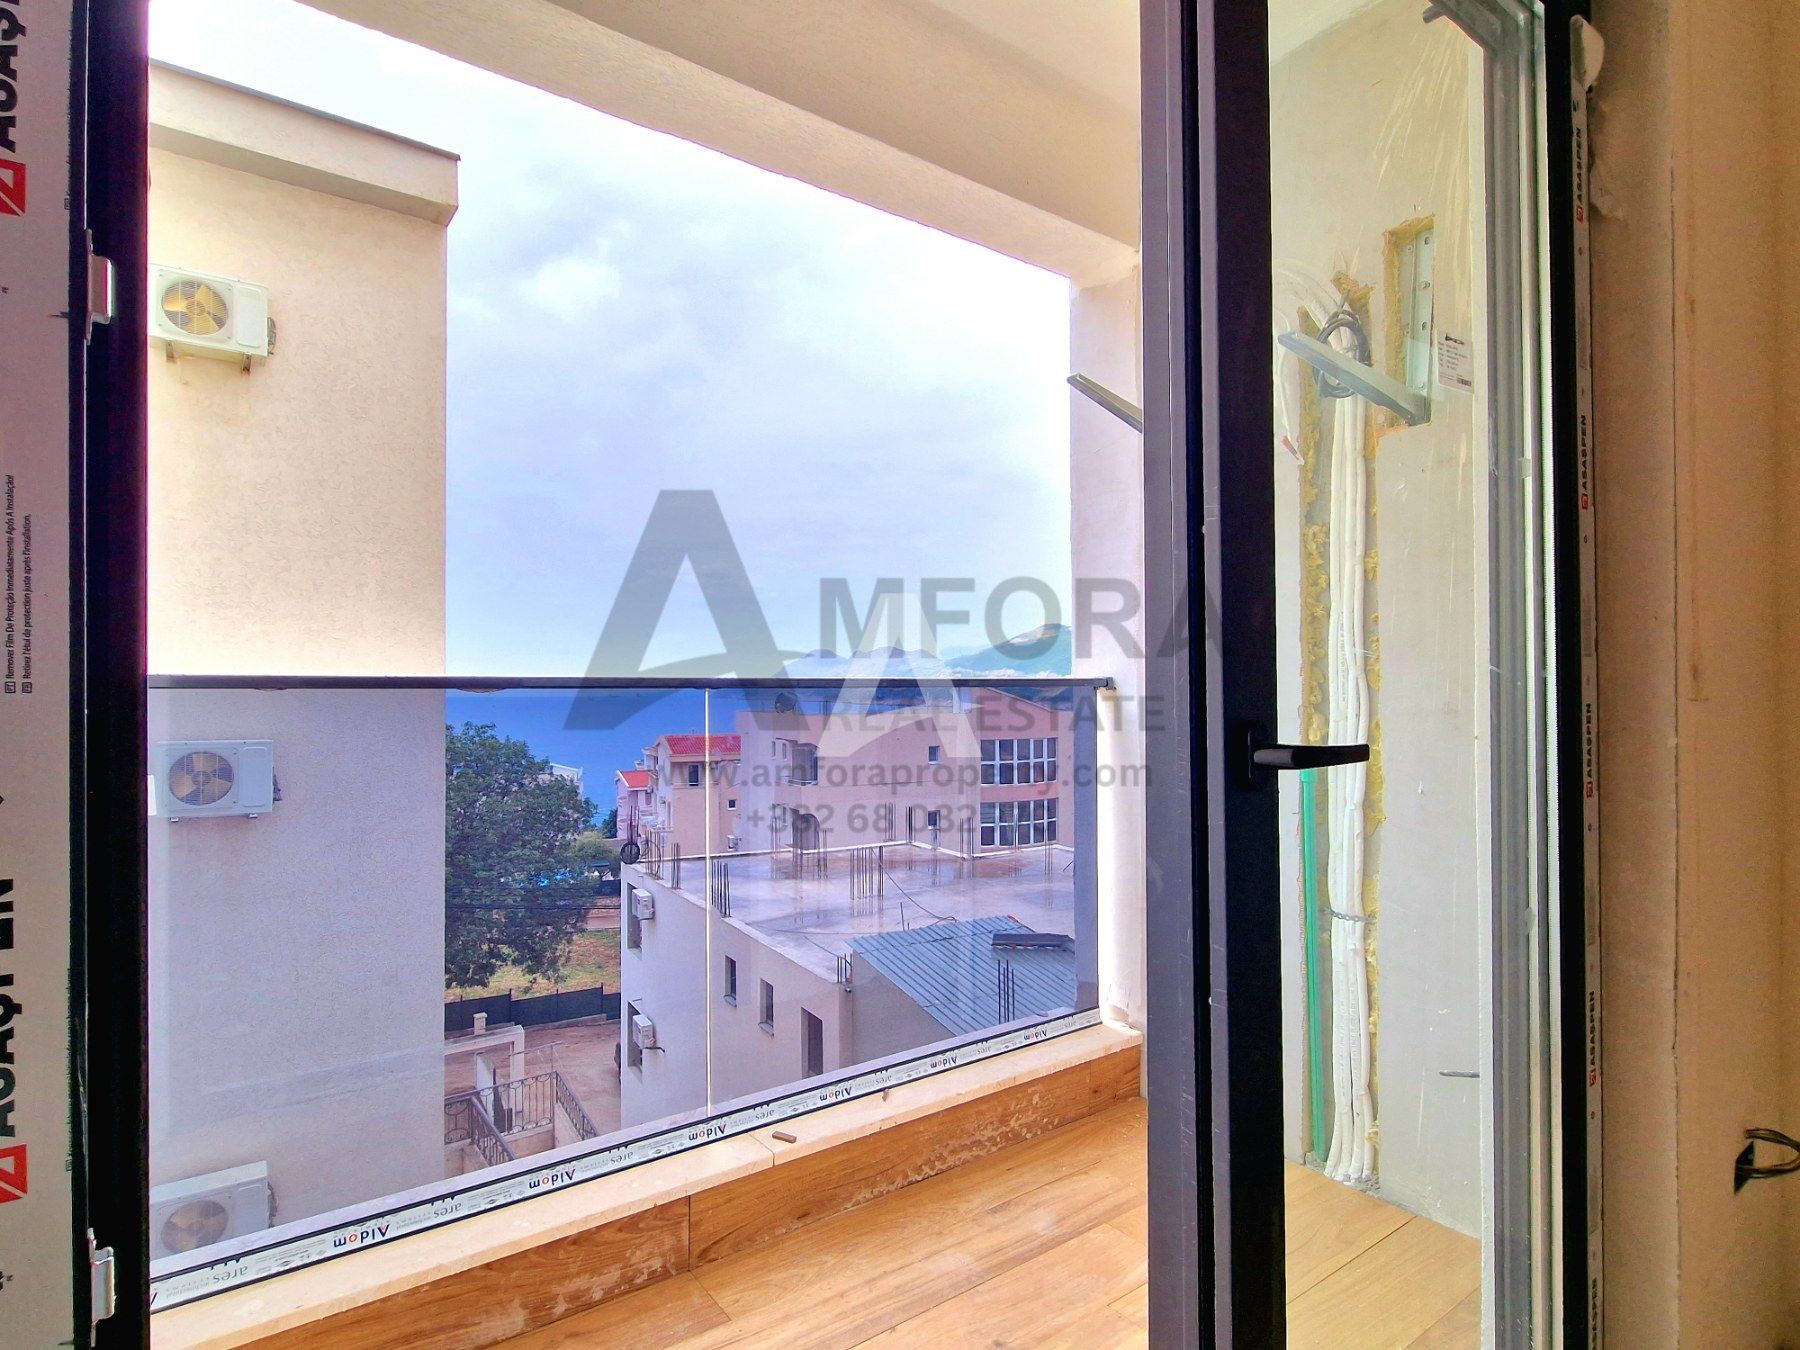 amforaproperty.com/Prodaja stanova u novogradnji u Baru, Dobre Vode - Jednosoban stan 39,74m2